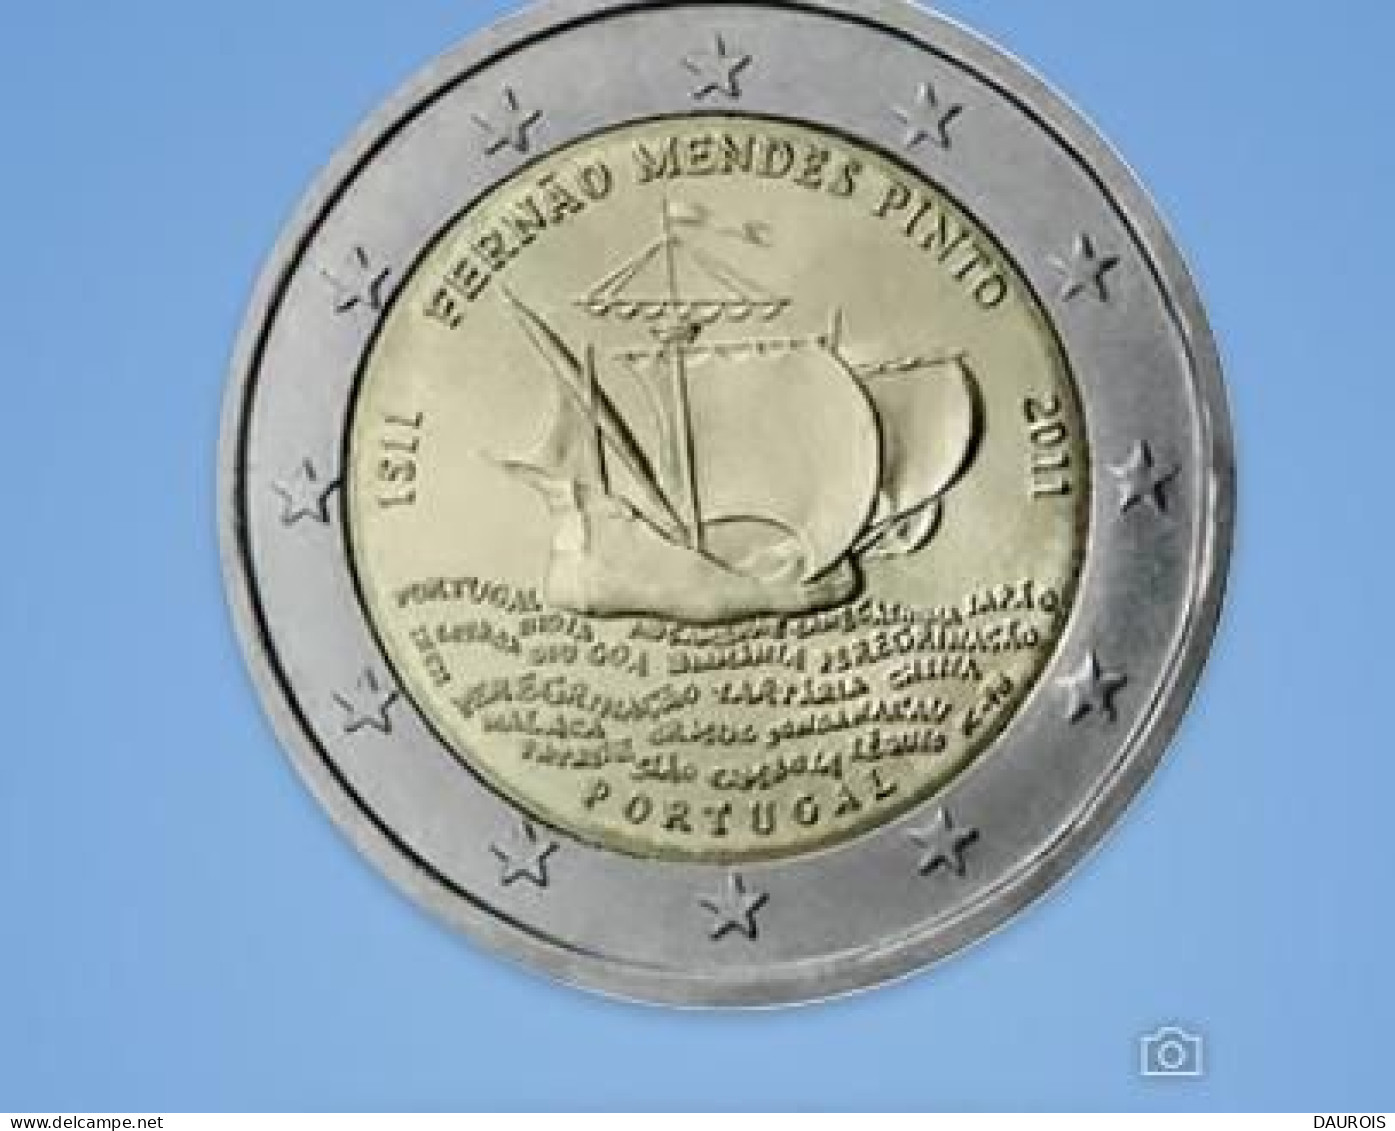 Série complète 2011 - 13 pièces 2 euro commémoratives ( Toutes mes collections euros neufs sous capsules)